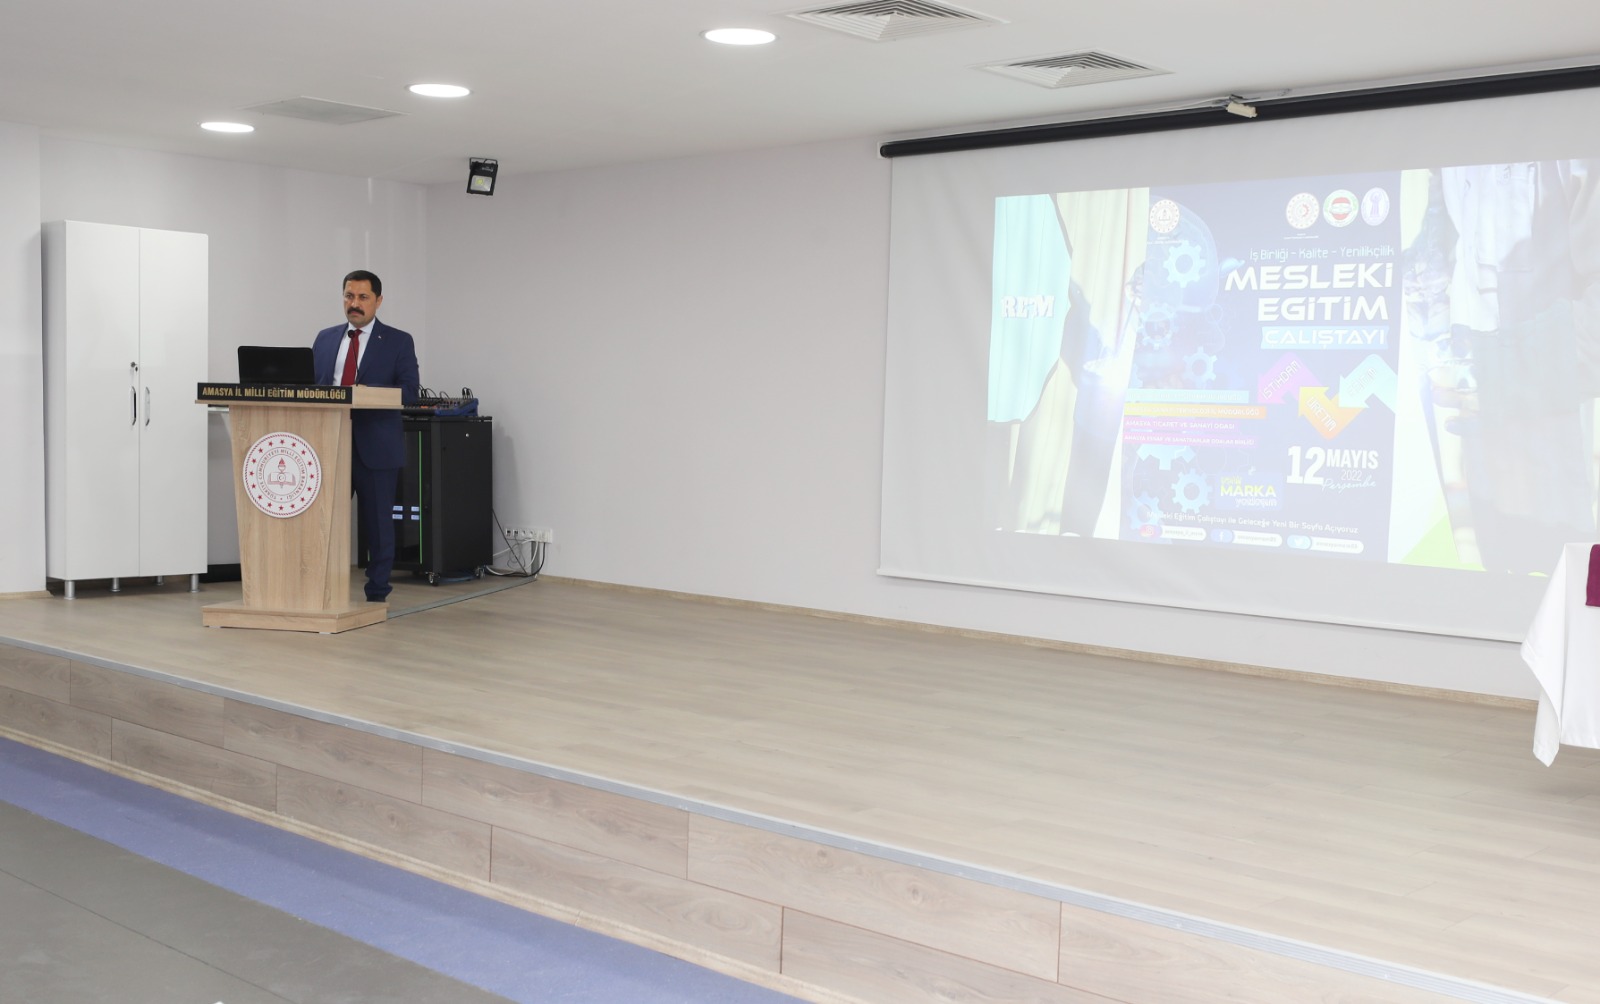 Amasya Valisi Mustafa MASATLI, Amasya İlinde Üretim, İstihdam ve Kalitenin Artırılması Amacıyla Gerçekleştirilen Mesleki Eğitim Çalıştayı’na Katıldı